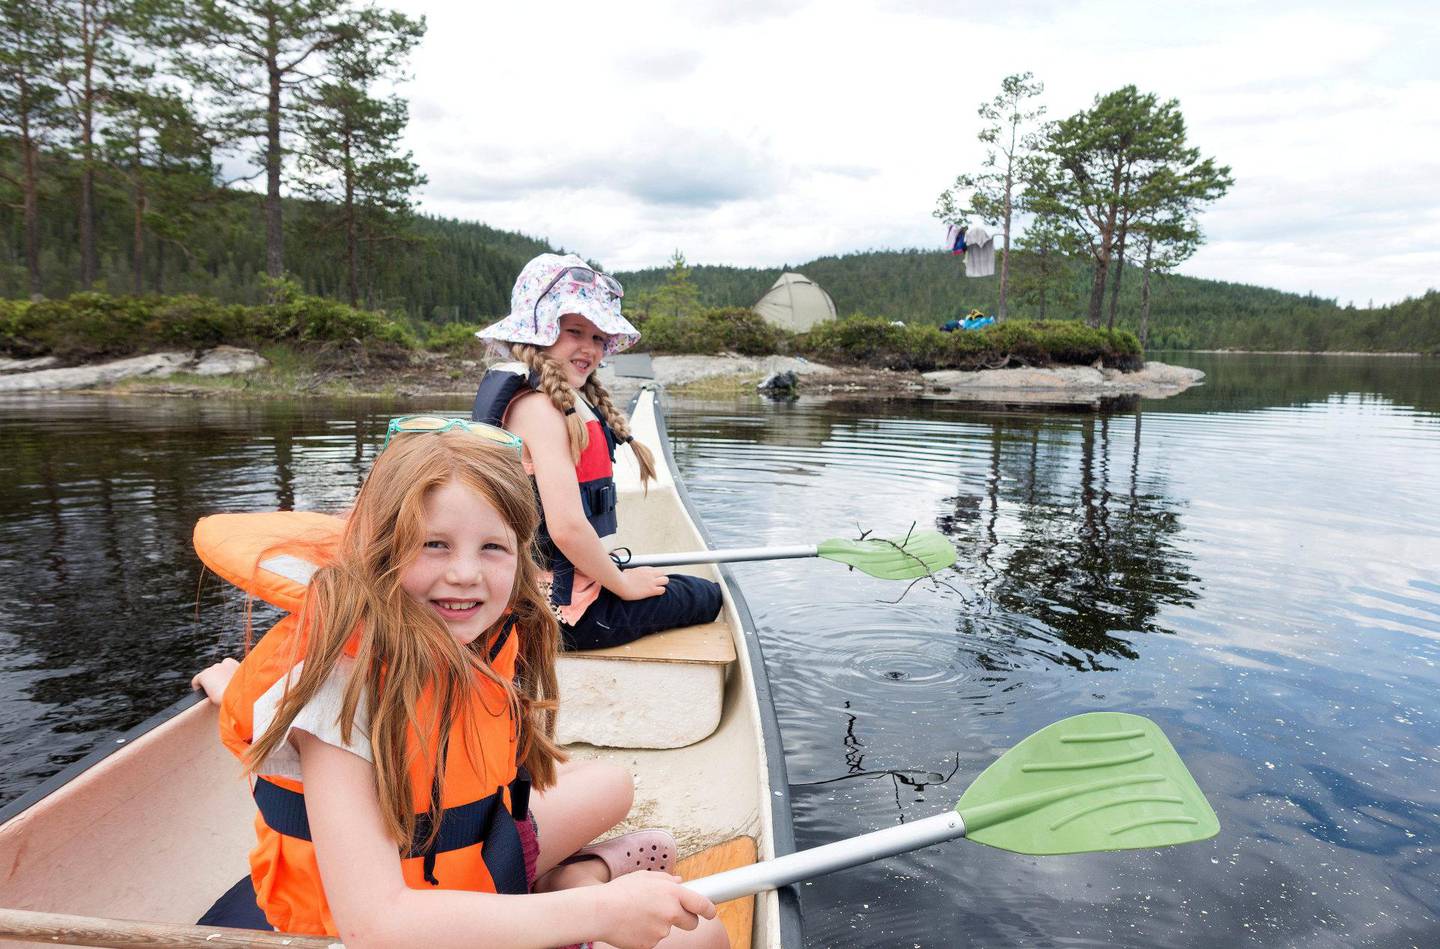 Med en bred og stabil kano kan både barn og voksne føle seg trygge på rolige vann. Men glem aldri redningsvesten.
Foto: Gorm Kallestad/NTB scanpix